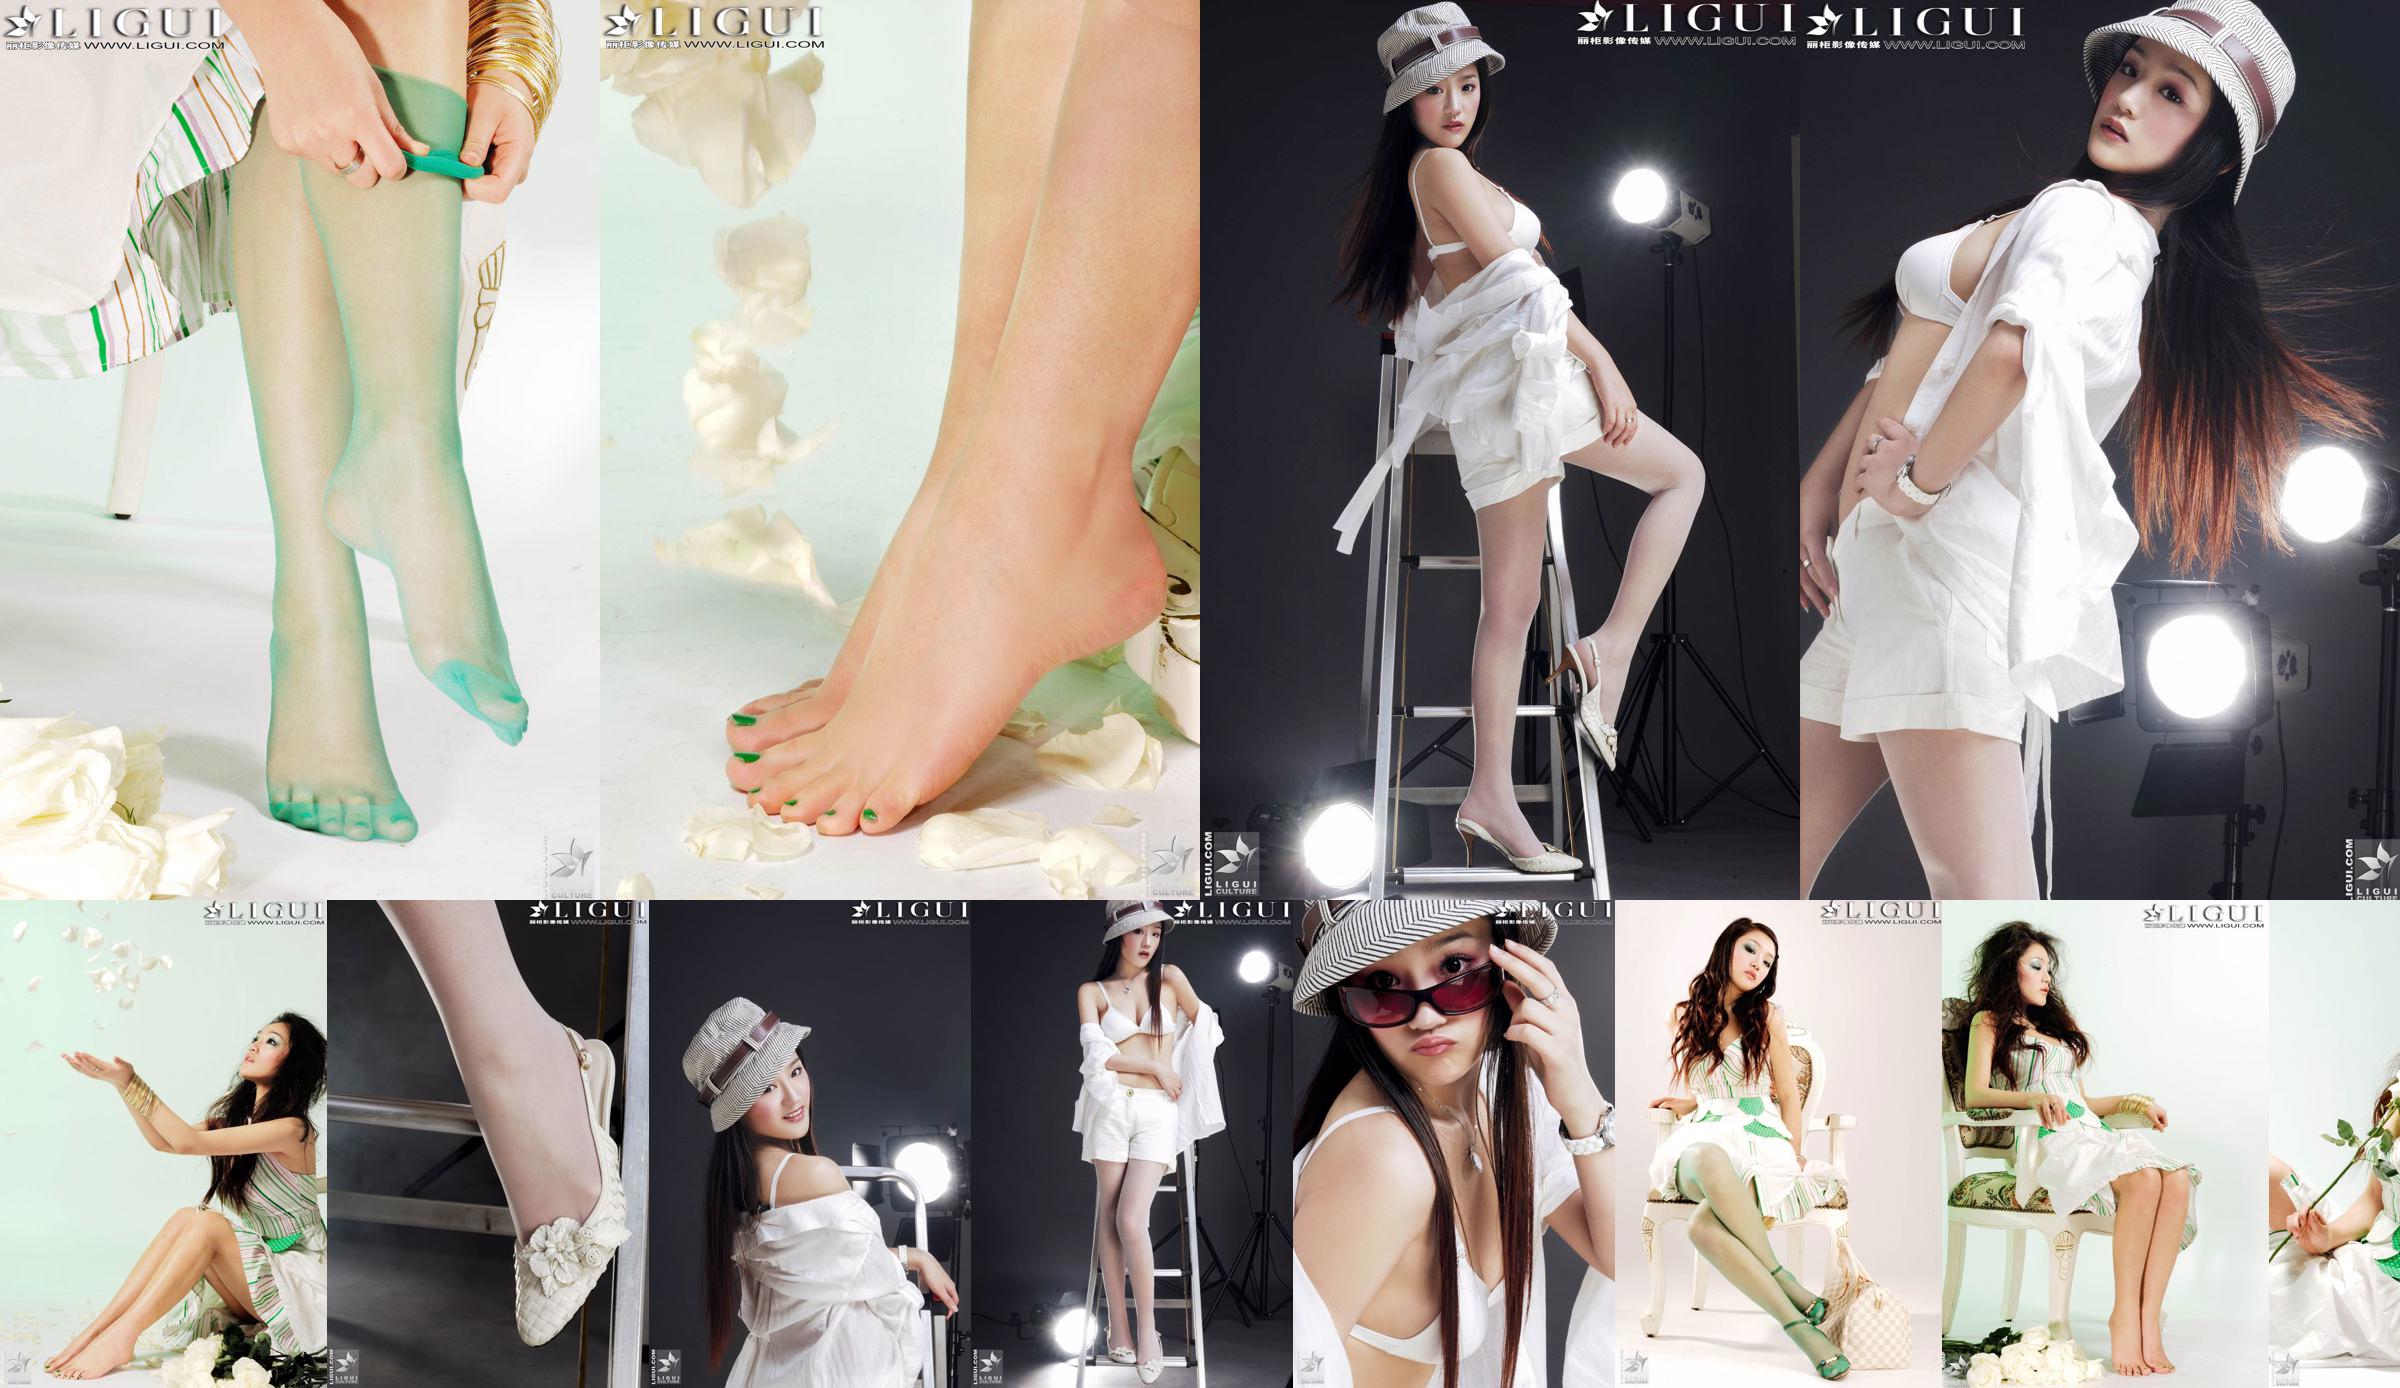 [丽 柜 贵 Fuß LiGui] Model Zhang Jingyans "Modischer Fuß" -Foto von schönen Beinen und Seidenfüßen No.8ba1d6 Seite 1